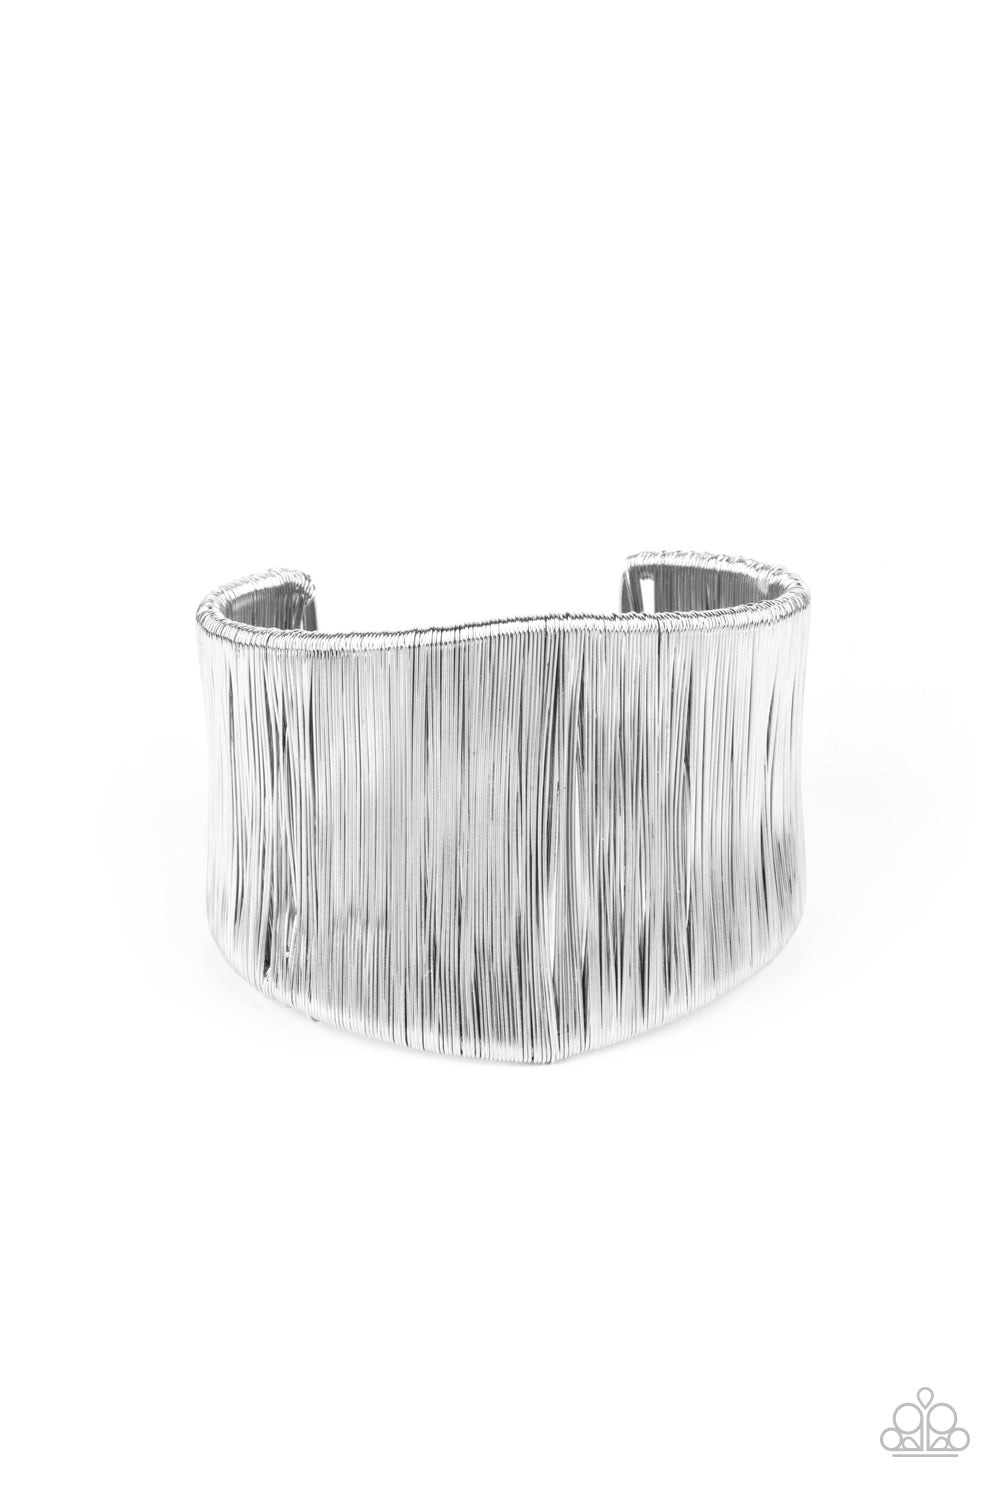 Hot Wired Wonder - Silver cuff bracelet